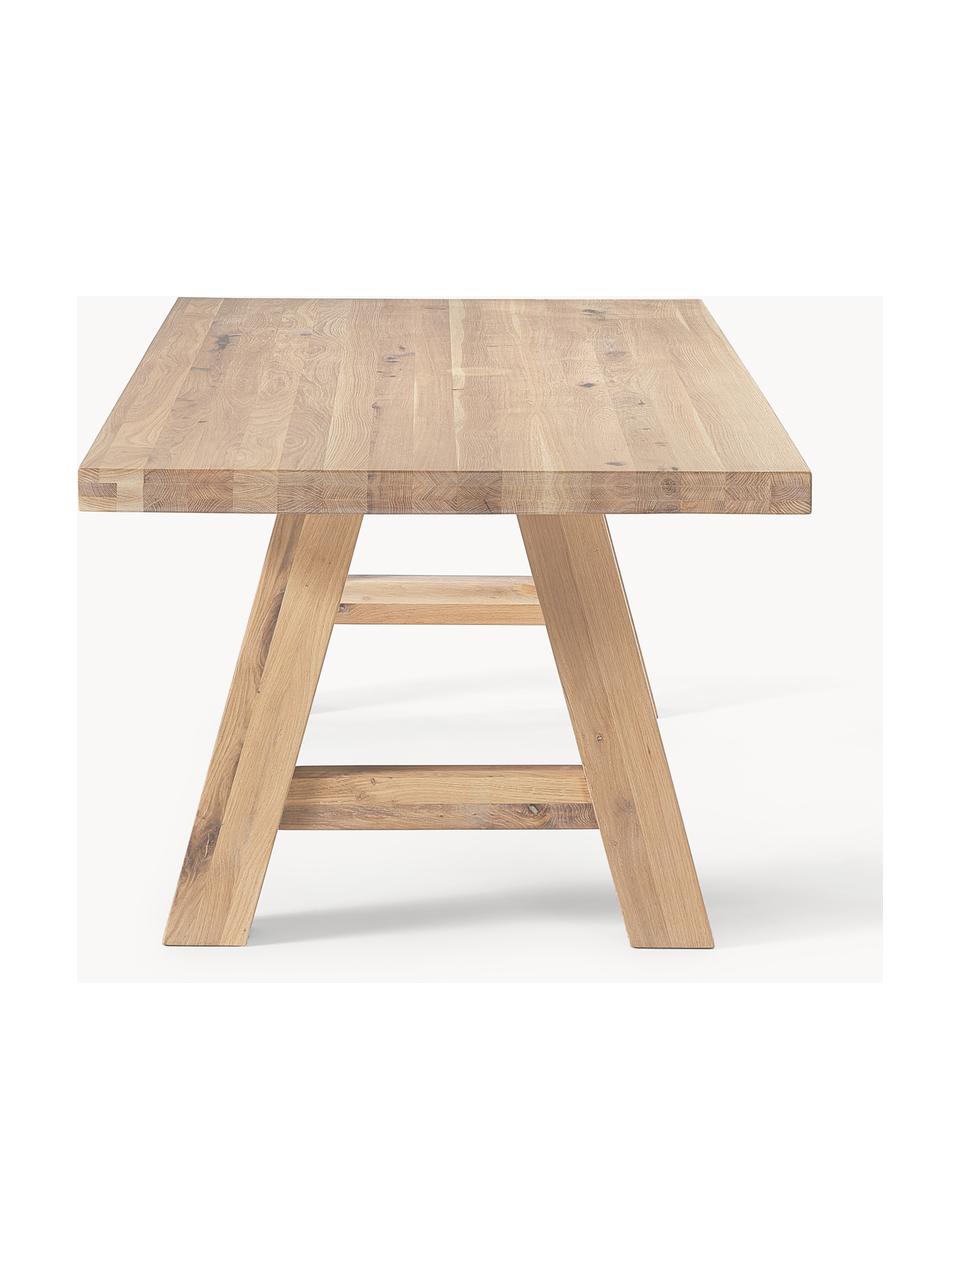 Jedálenský stôl z dubového dreva Ashton, rôzne veľkosti, Masívne dubové drevo, jemne naolejované 

100 % drevo z udržateľného lesného hospodárstva
Tento produkt je vyrobený z trvalo udržateľného dreva s certifikátom FSC®., Dubové drevo, ošetrené svetlým olejom, Š 220 x H 100 cm